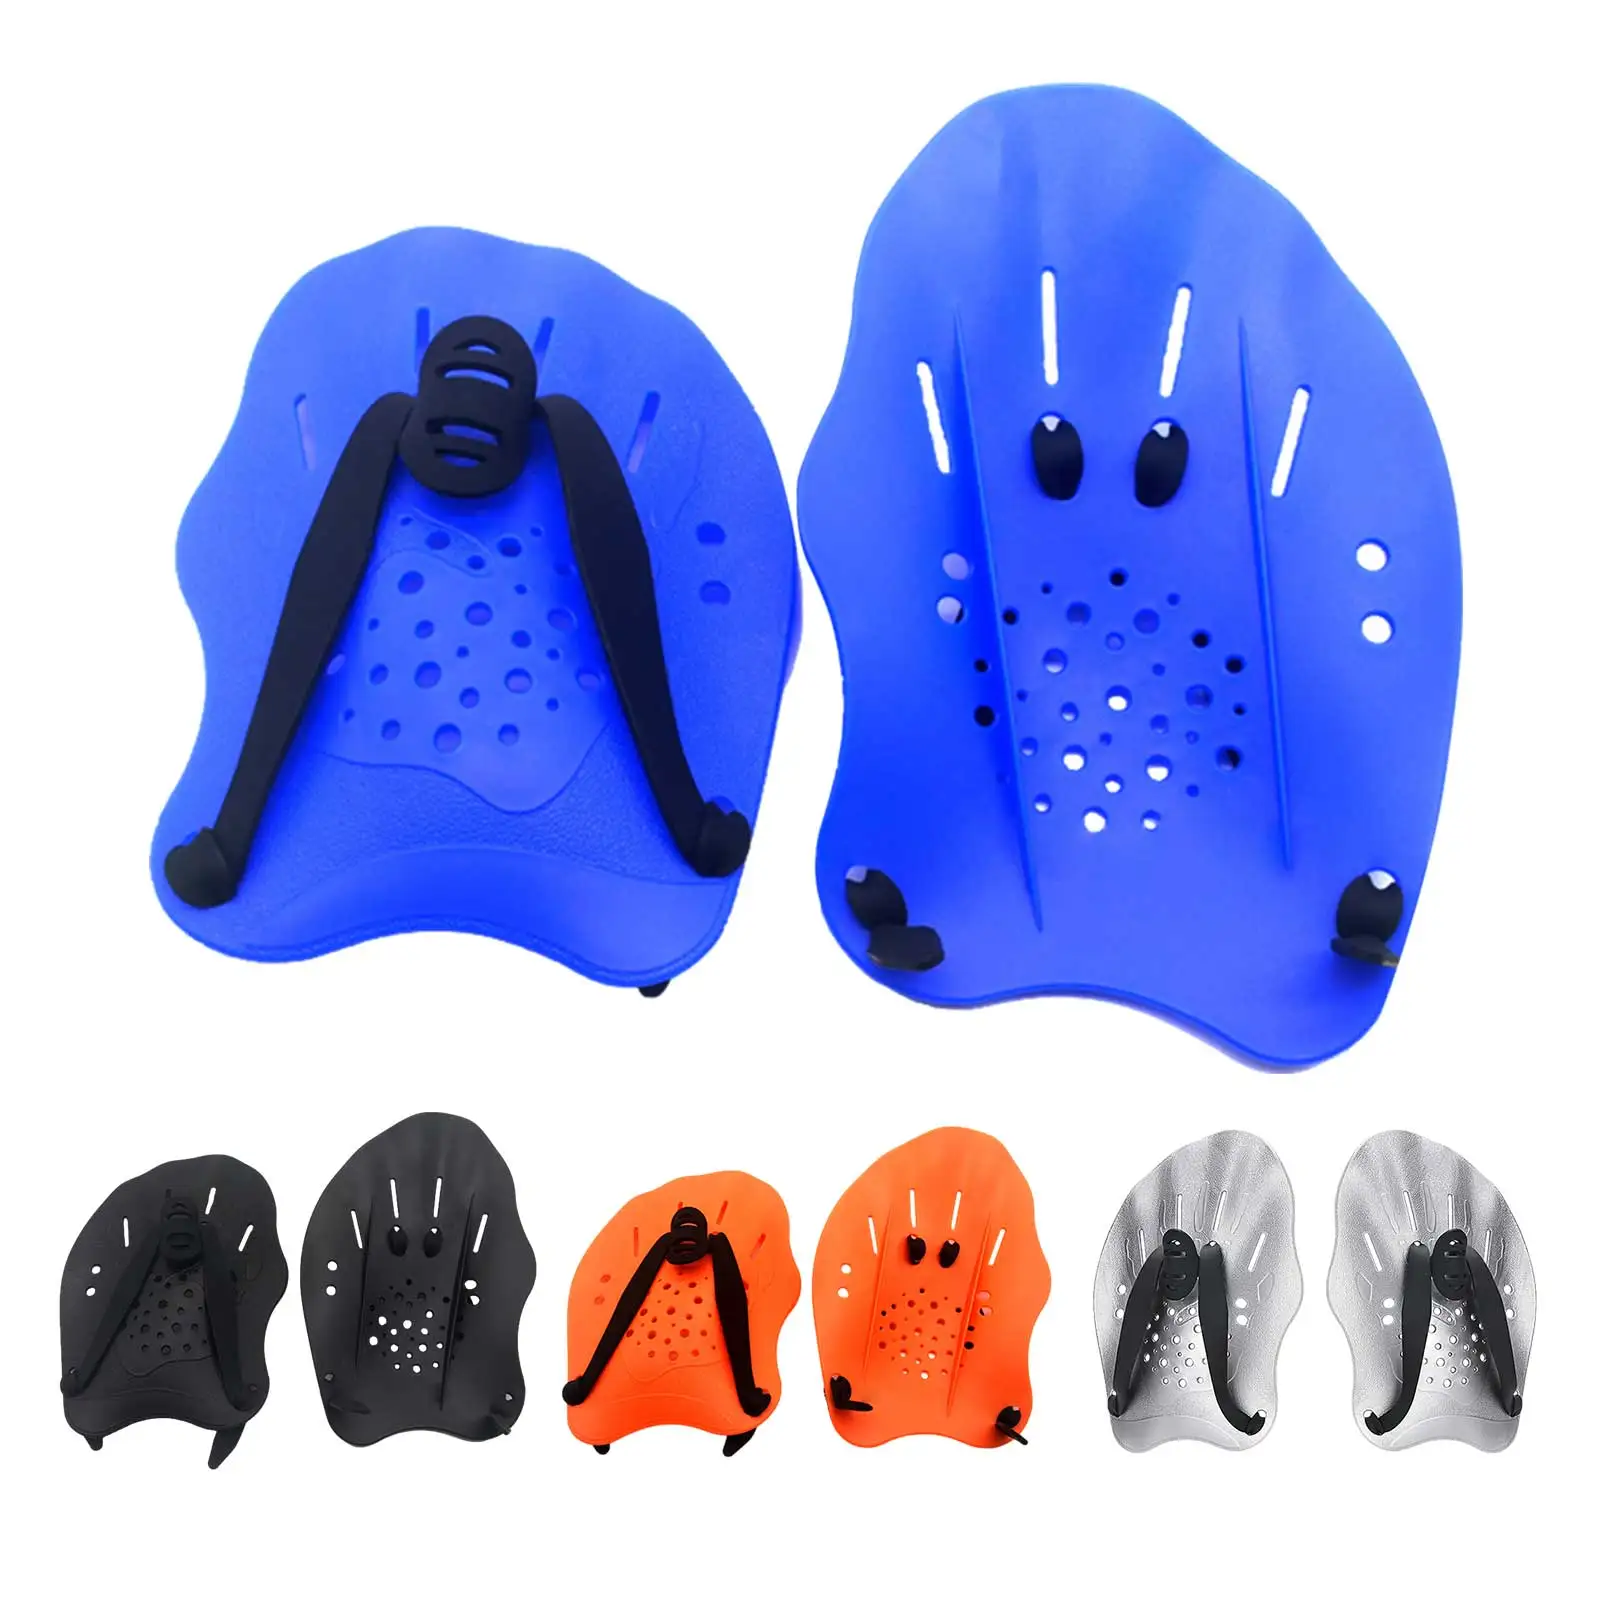 

Регулируемые силиконовые перчатки для обучения плаванию, для мужчин, женщин, мужчин и детей